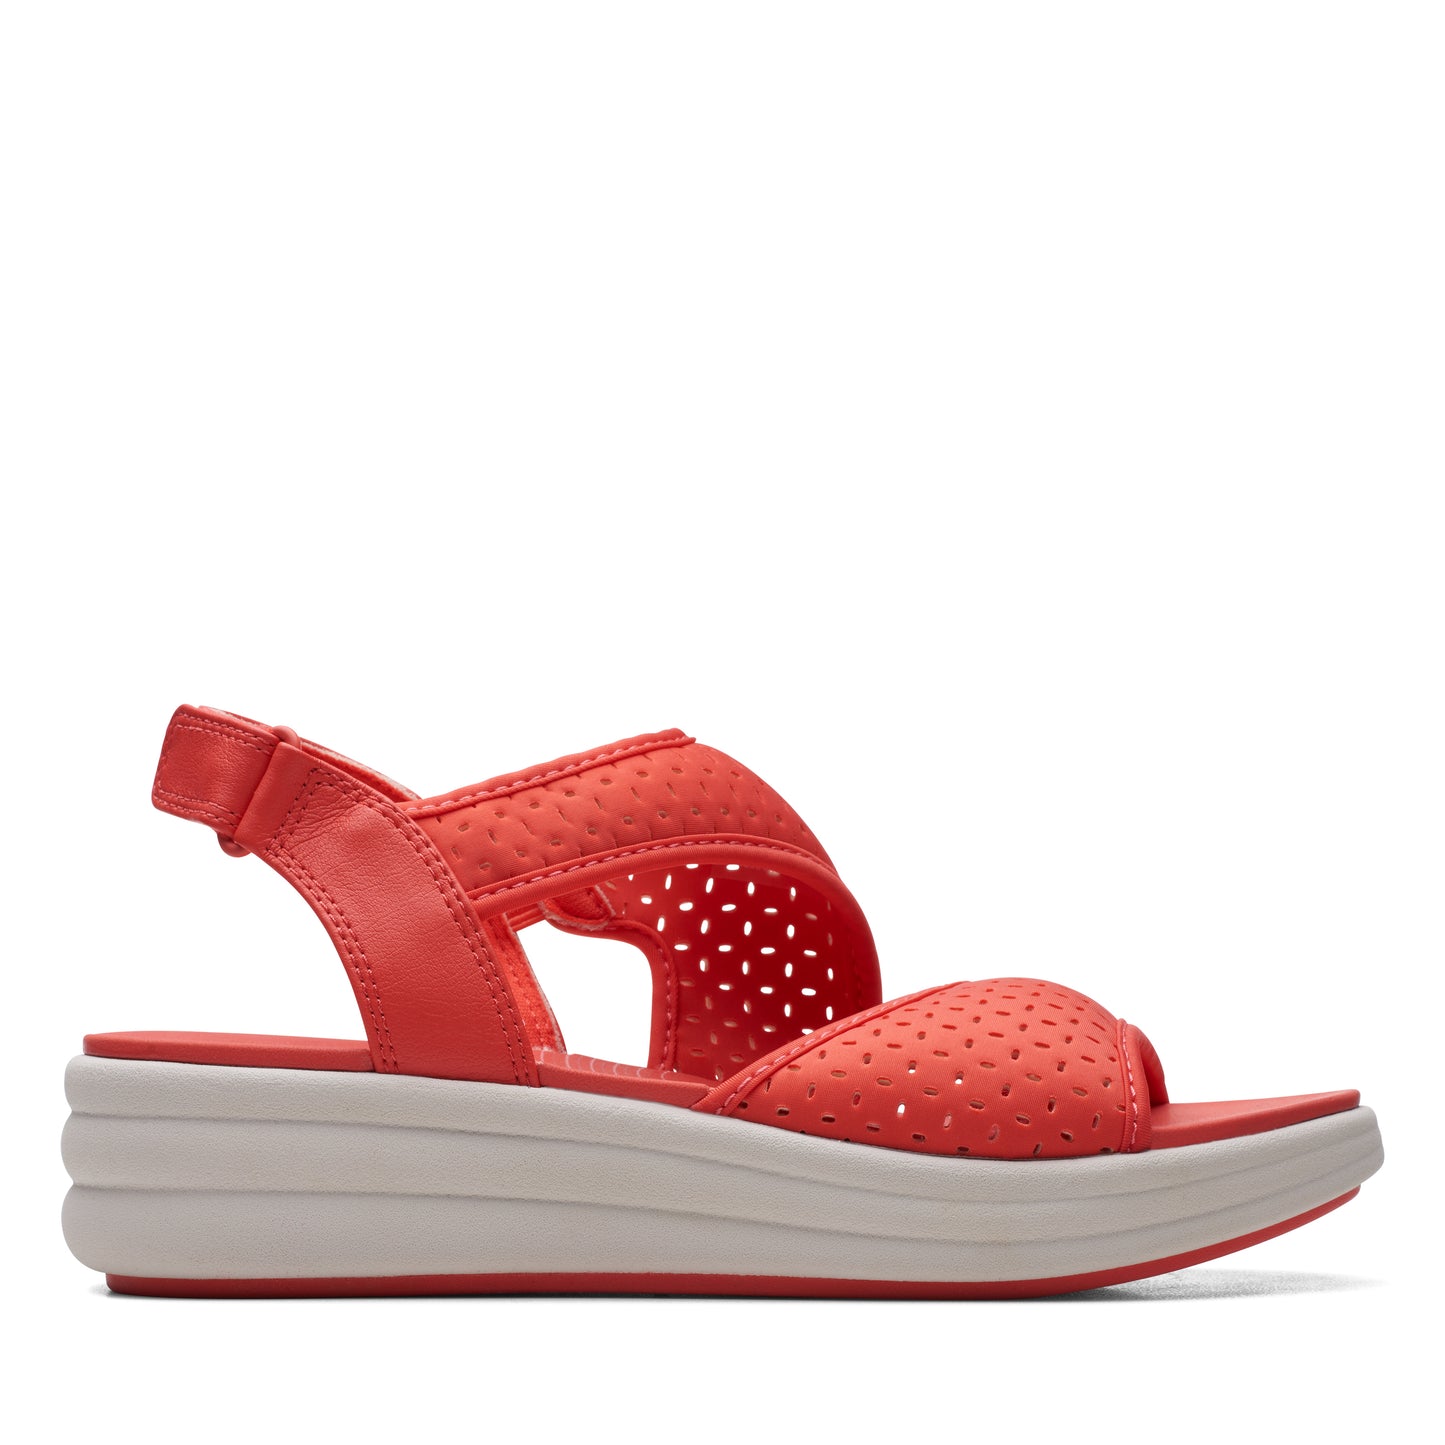 Zapato De Cuña De La Marca Clarks Para Mujer Modelo Drift Fern GrenadineEn Color Rojo